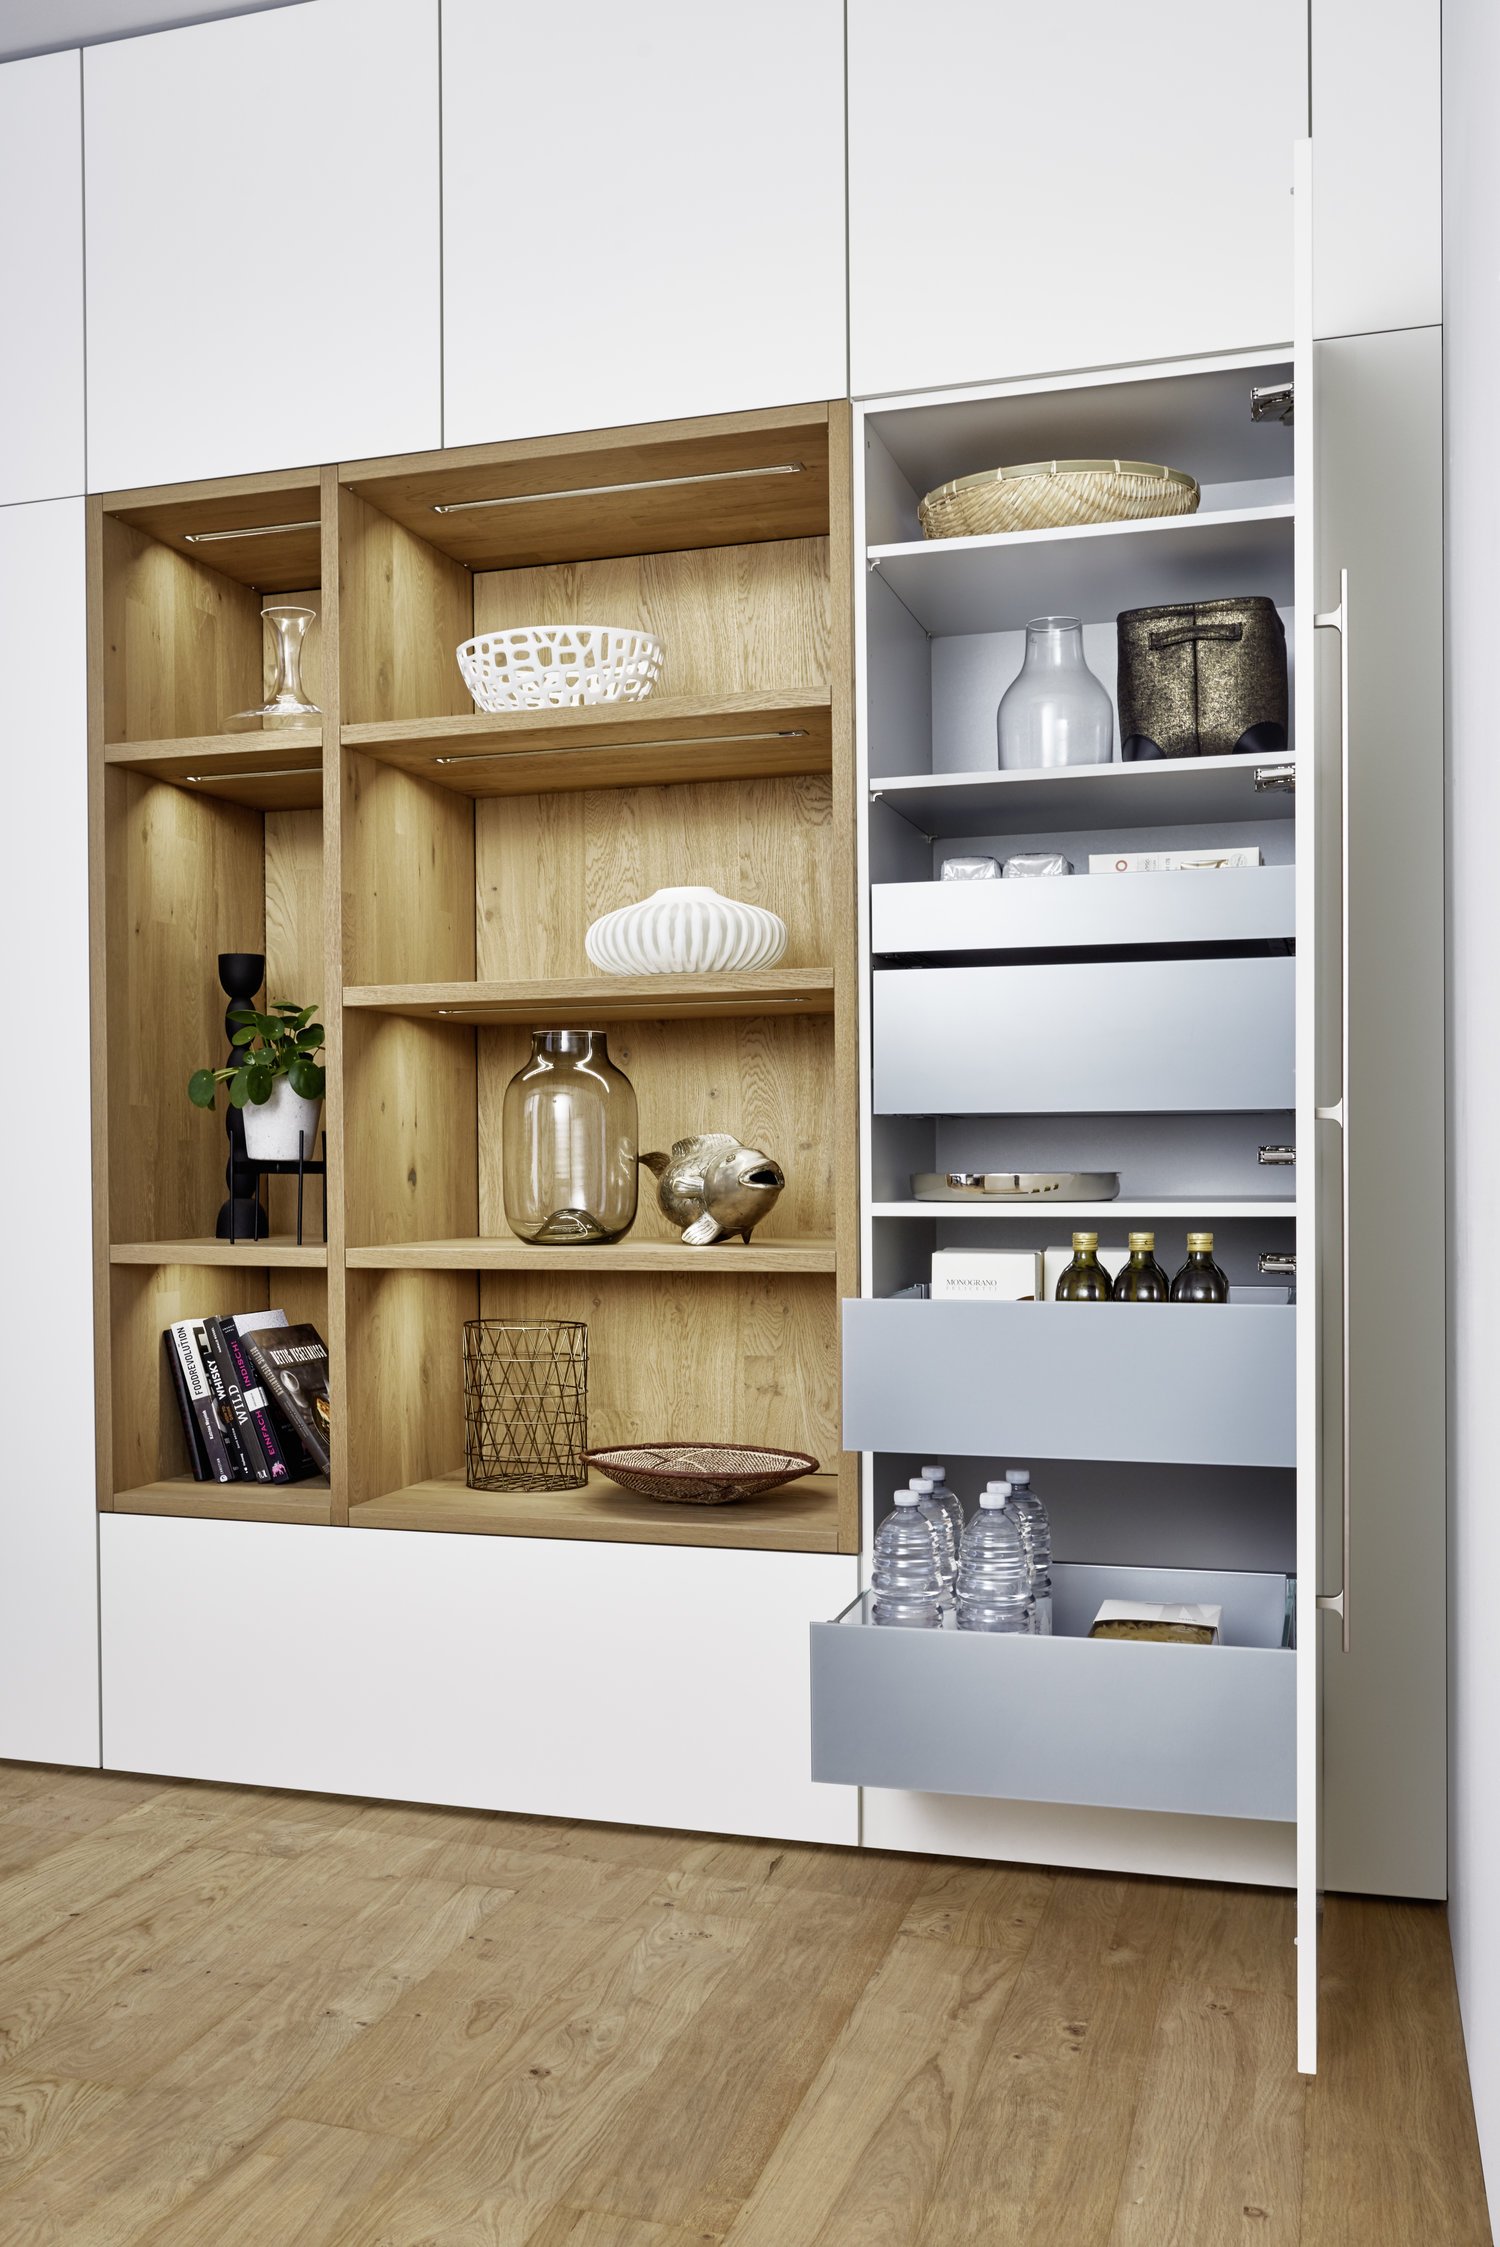 BONDI-E  XYLO connaught kitchens white minimalist kitchen with woodwork storage.jpg